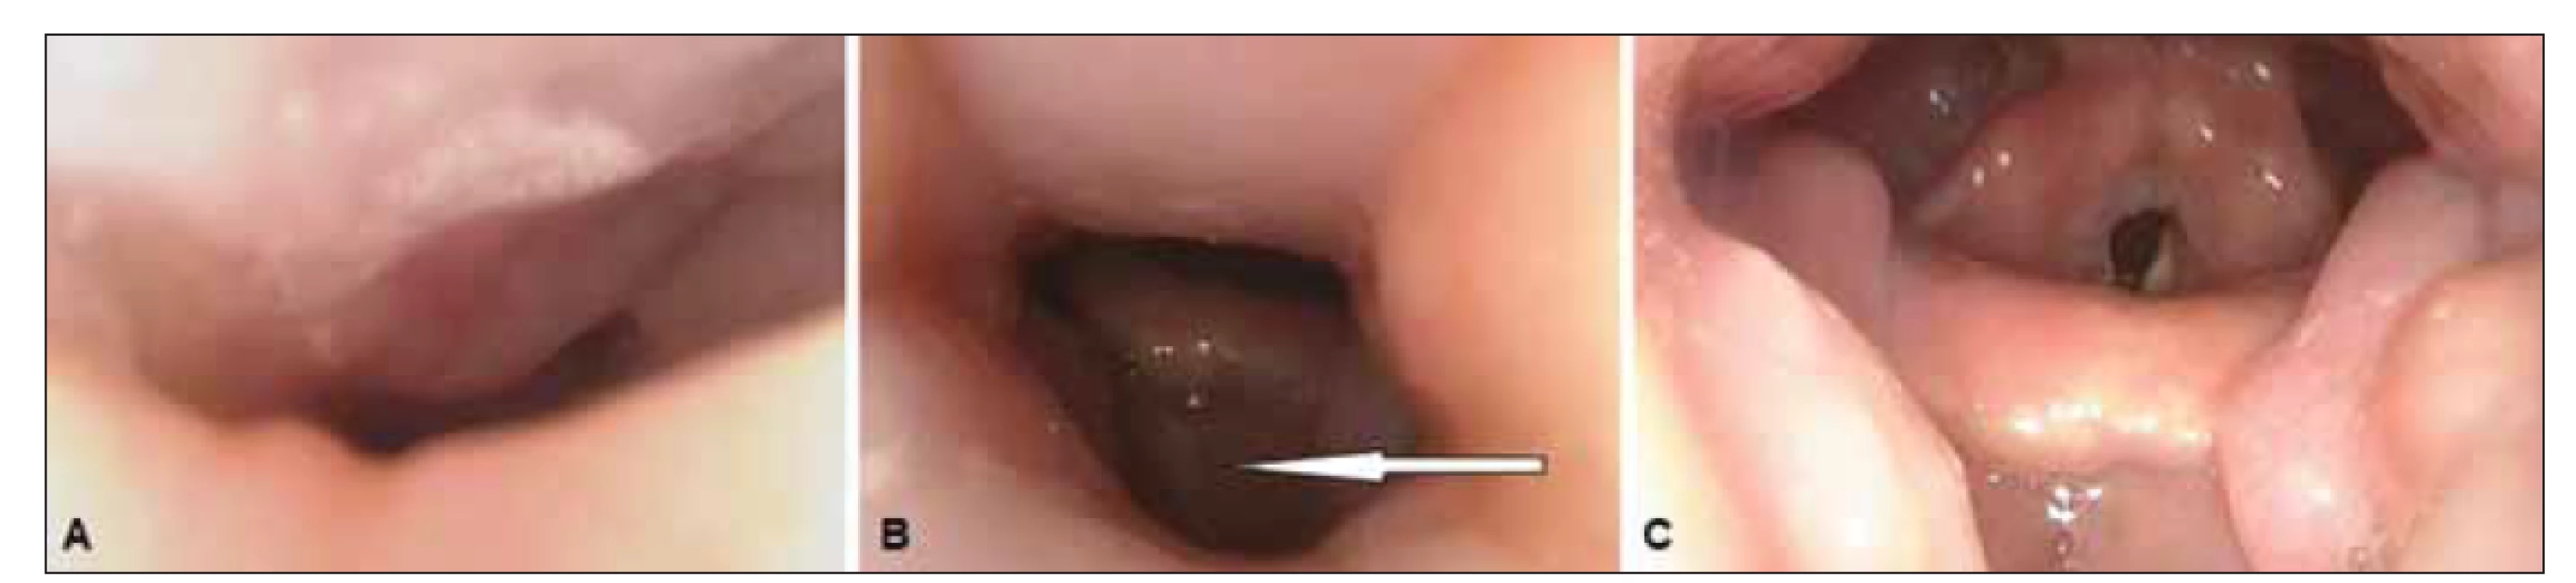 Spánková endoskopie s přetlakovou ventilací, endoskopický pohled na horní dýchací cesty. (A) Předozadní obstrukce měkkého
patra při tlaku 0 hPa; (B) stav horních dýchacích cest při tlaku 12 hPa – částečná obstrukce v oblasti měkkého patra a orofaryngu, přetrvávání
úplné obstrukce kořene jazyka s útlakem epiglottis (šipka); (C) horní dýchací cesty volné ve všech etážích při tlaku 18 hPa.<br>
Fig. 3. Drug-induced sleep endoscopy with positive airway pressure; endoscopic view of the upper airways. (A) Anteroposterior
obstruction of the soft palate at a pressure of 0 hPa; (B) posture of the upper airways at a pressure of 12 hPa – partial obstruction in the area
of the soft palate and oropharynx, and persistence of complete obstruction of the root of the tongue with the oppression of the epiglottis
(arrow); (C) upper airways without obstruction in all sites at a pressure of 18 hPa.